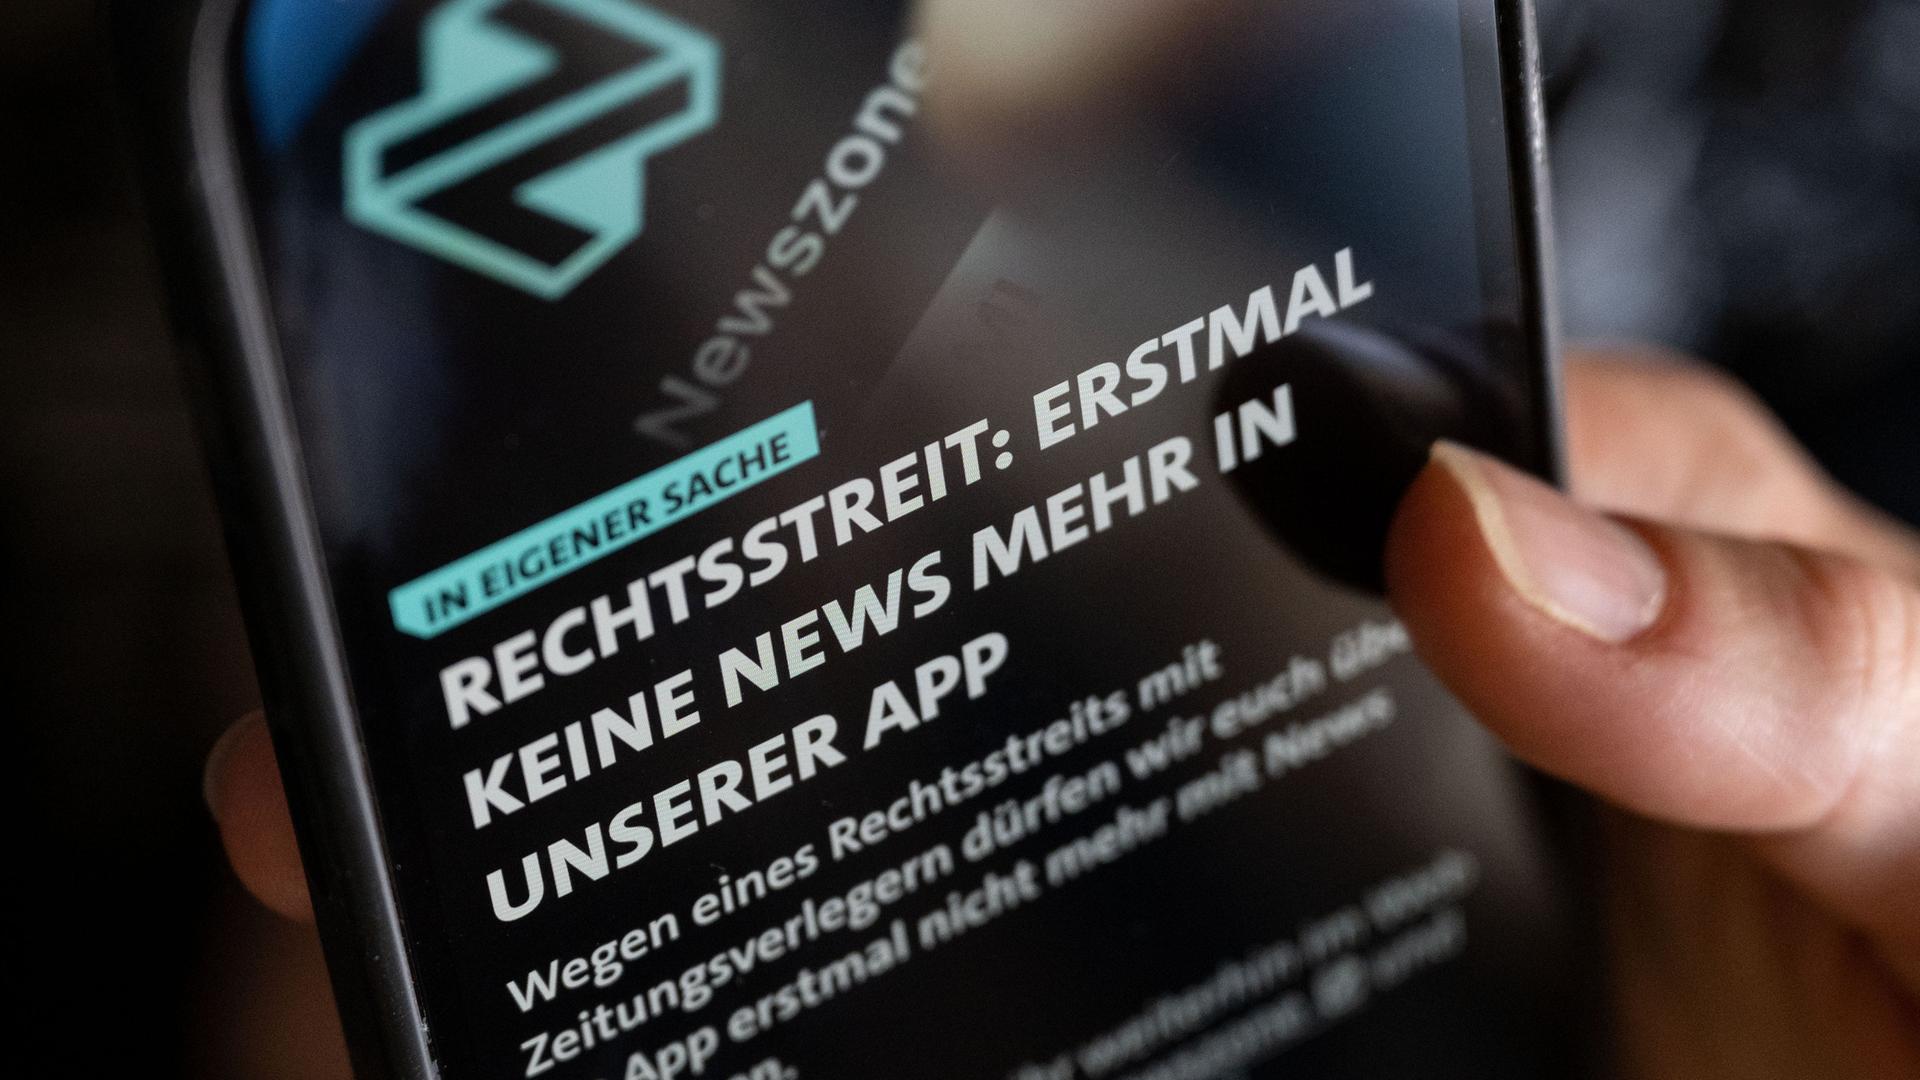 Ein Hinweis ist auf der Startseite der App "Newszone" zu sehen. Der Südwestrundfunk (SWR) legt wegen eines Rechtsstreits mit Verlagen sein App-Angebot vorerst auf Eis.